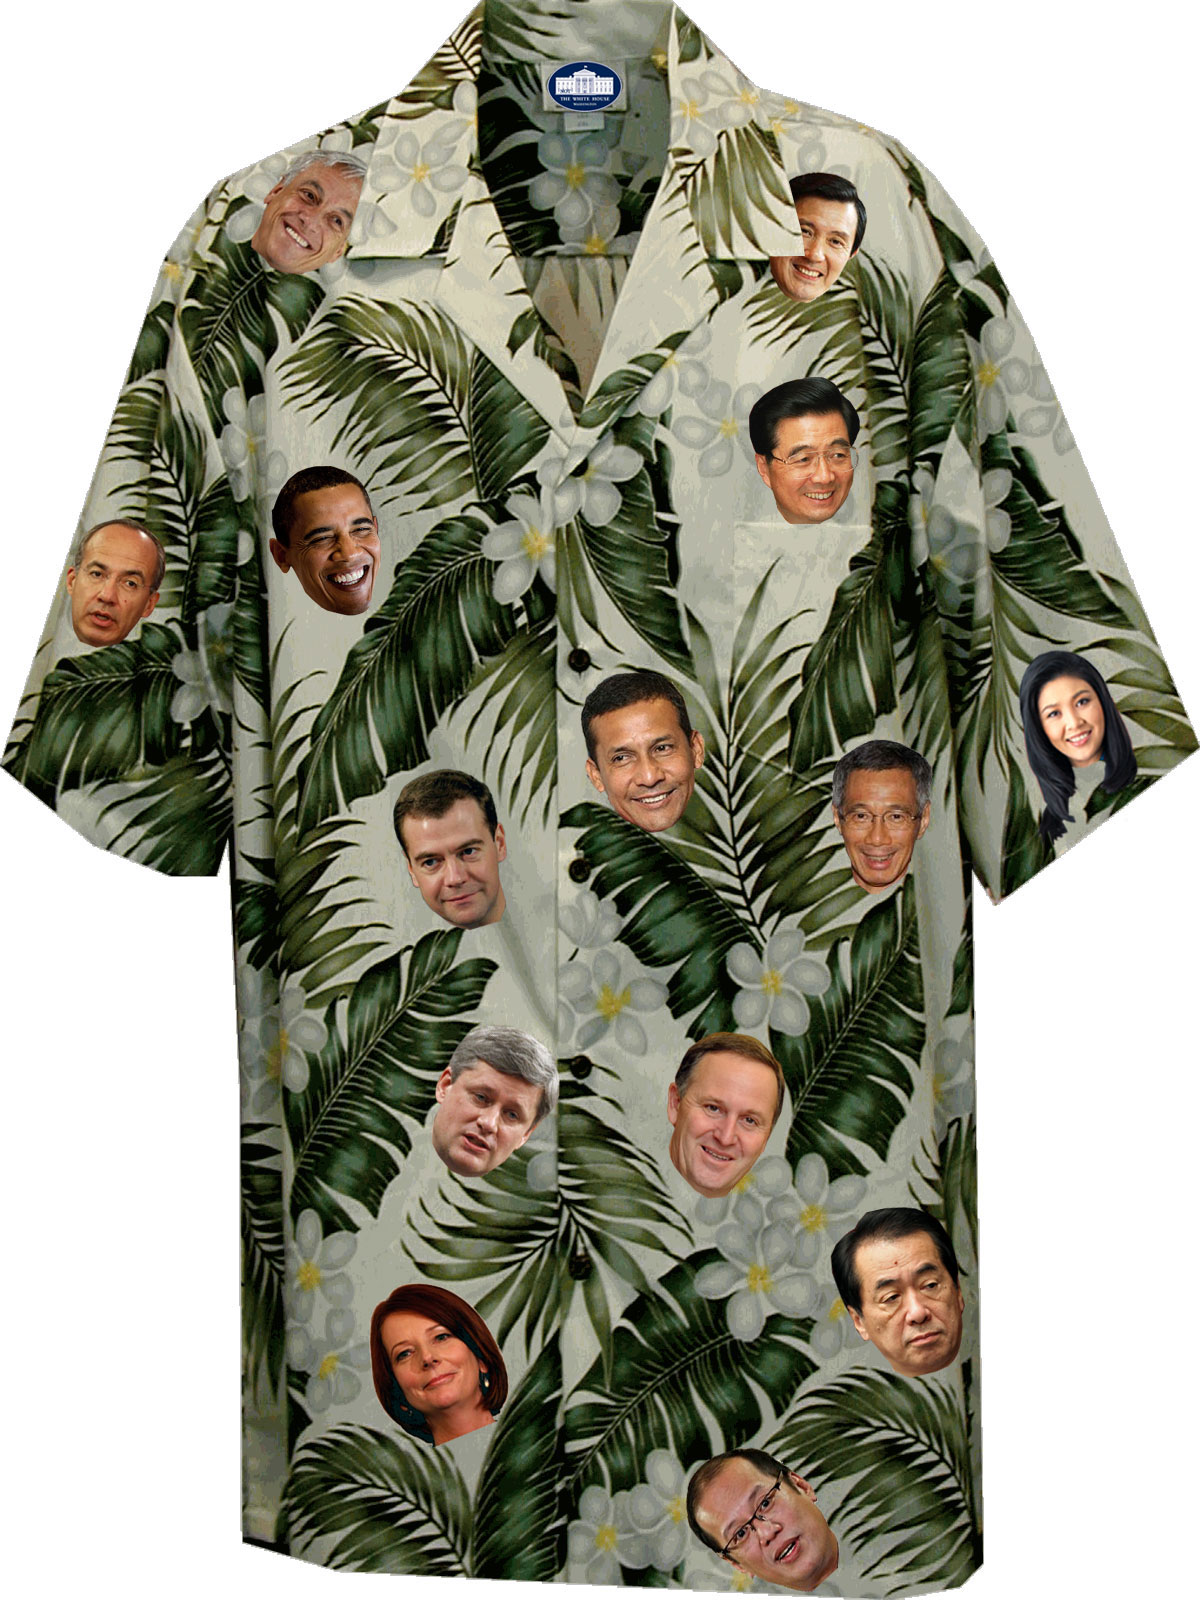 APEC Hawaii 2011 Leaders Shirt